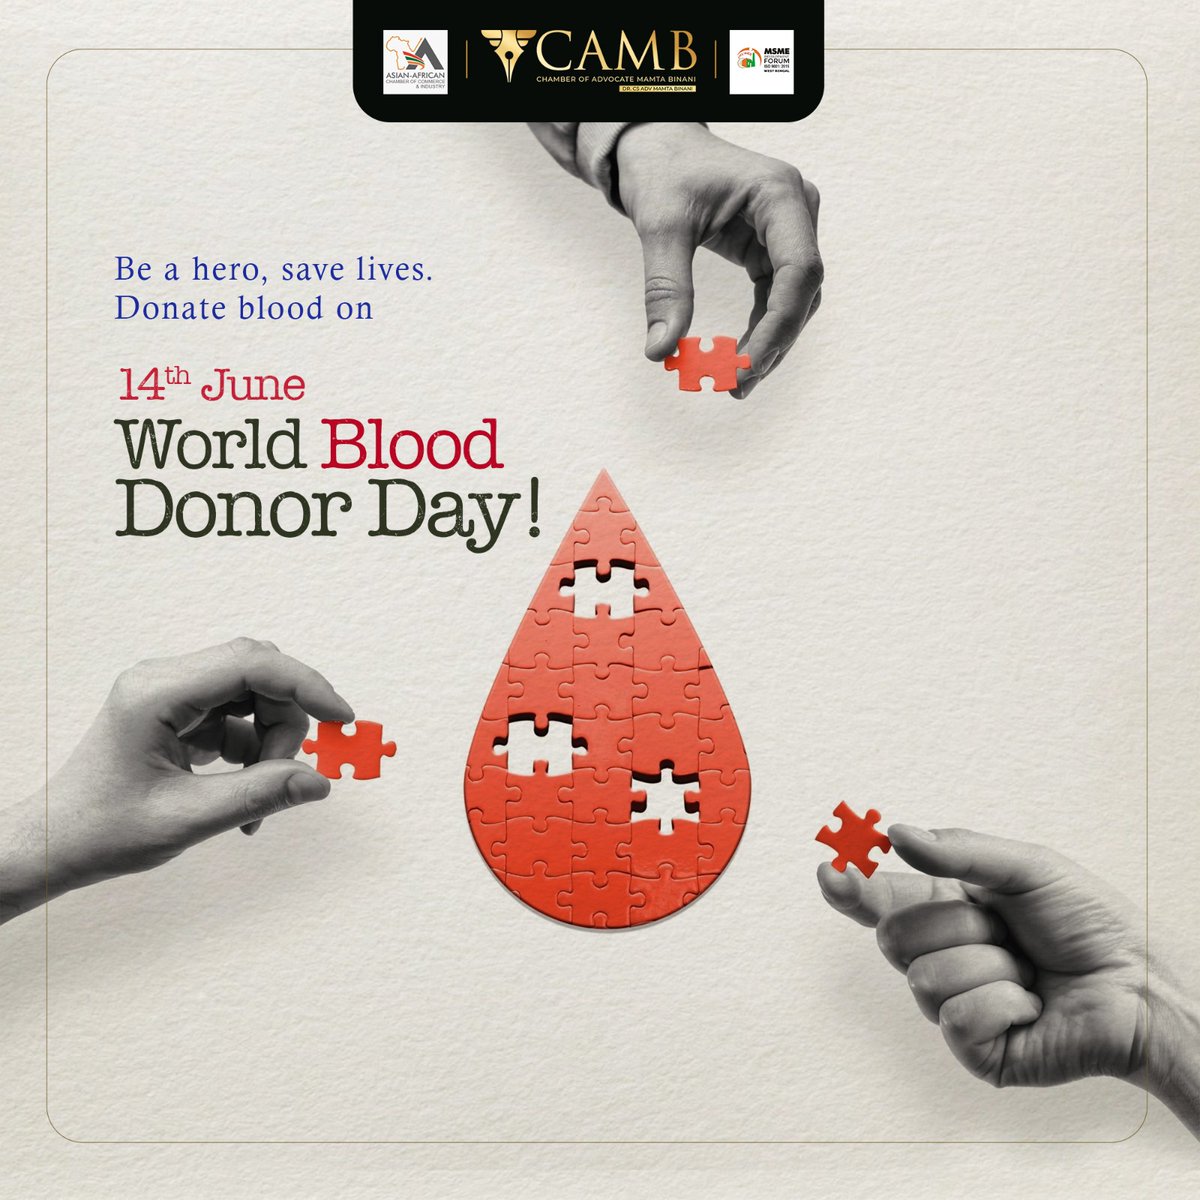 Donate blood on June 14th, World Blood Donor Day! 💪💉

#MamtaBinani #BloodDonation #DonateBlood #SaveLives #WorldBloodDonorDay #BeAHero #GiveBlood #BloodDonor #CommunityService #HealthAndWellness #Humanitarian #SpreadAwareness #BloodDrive #LifeSaver #BloodDonationMatter